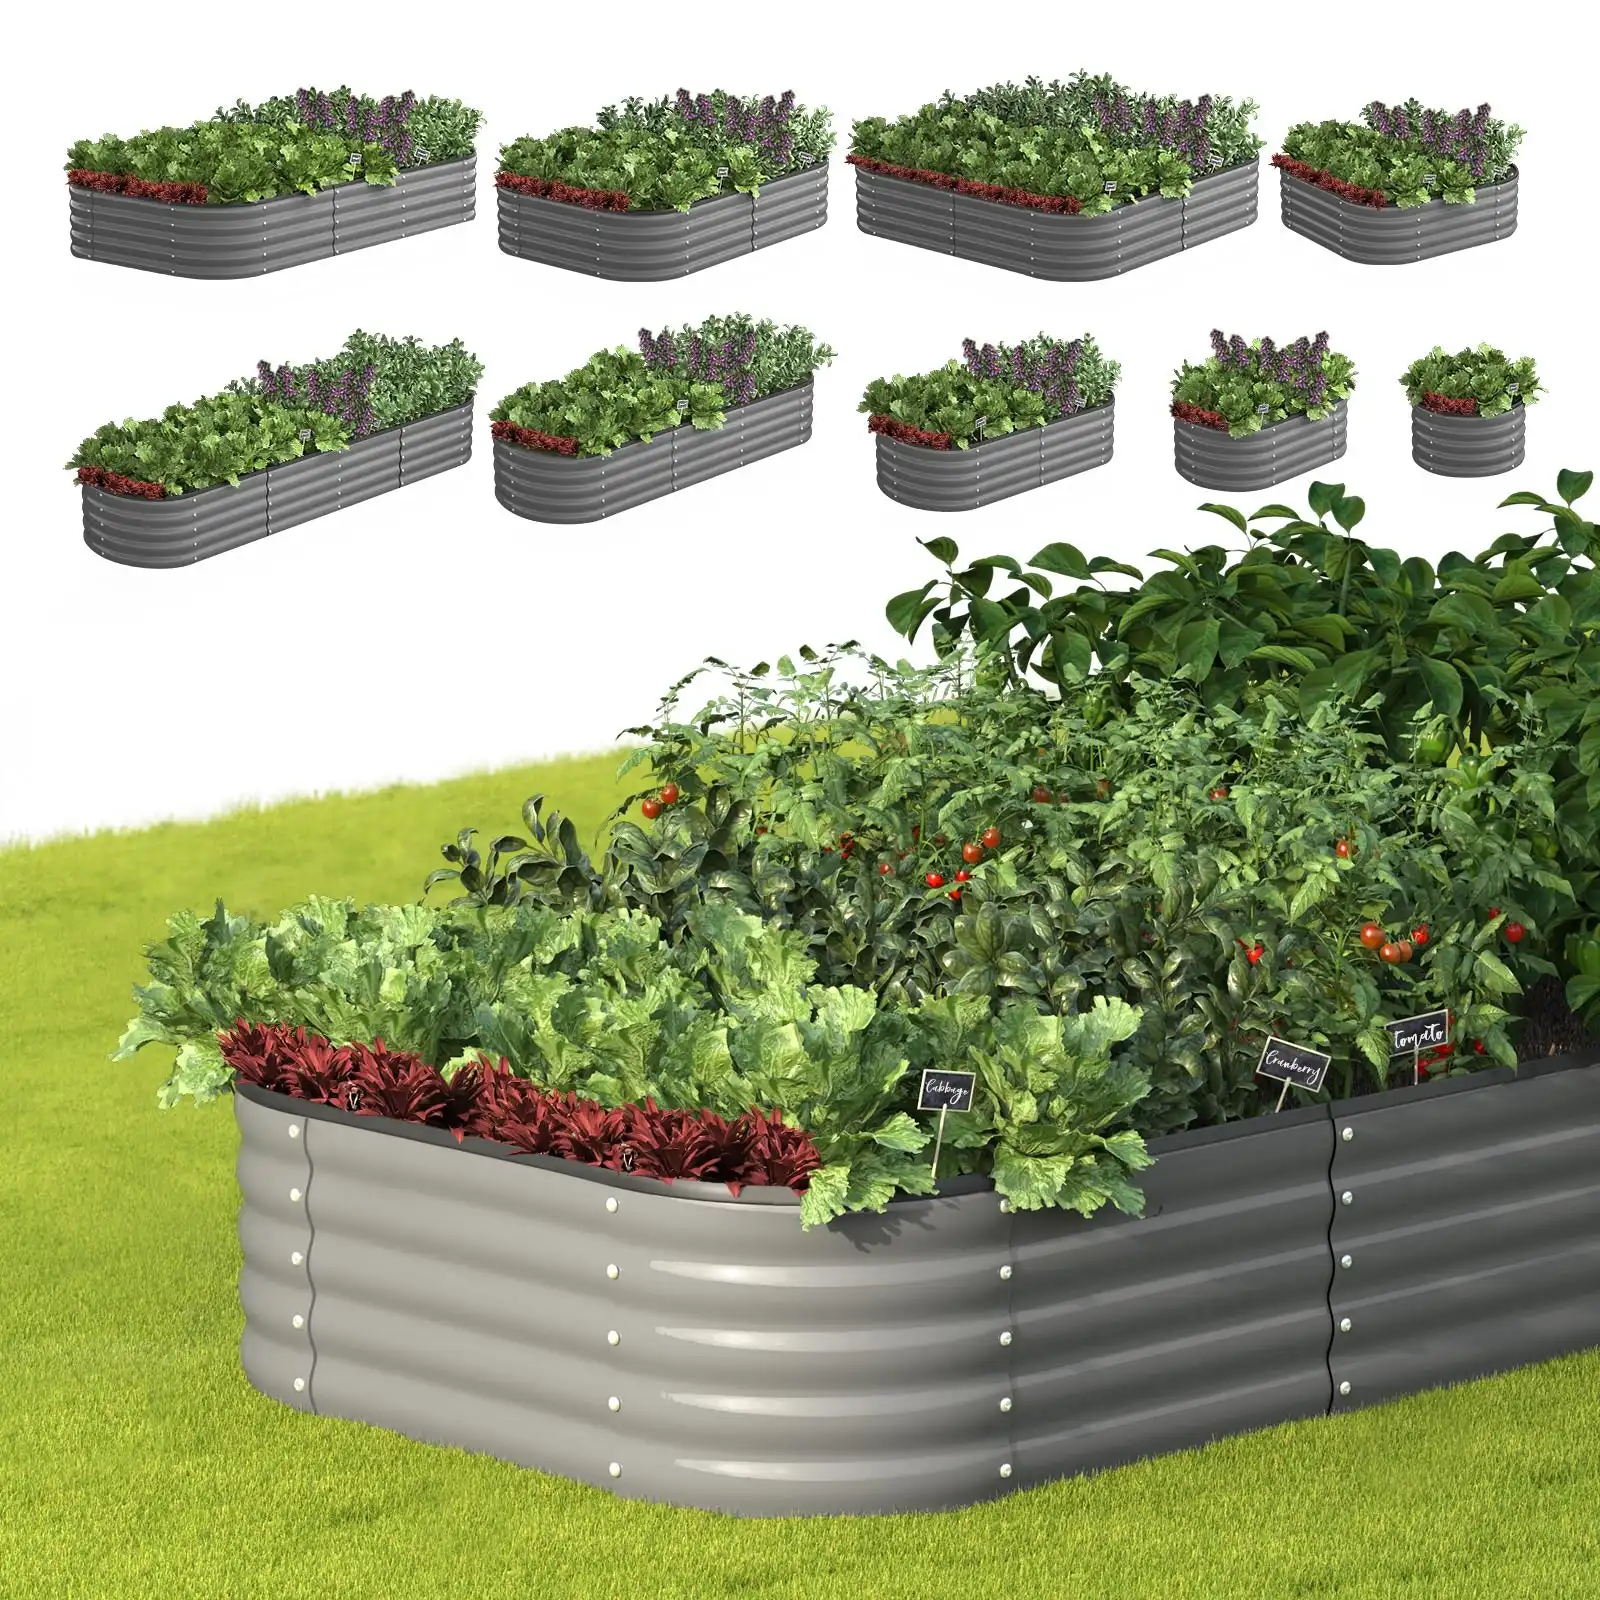 Livsip 9-IN-1 Raised Garden Bed Modular Kit Planter Oval Galvanised Steel 40CM